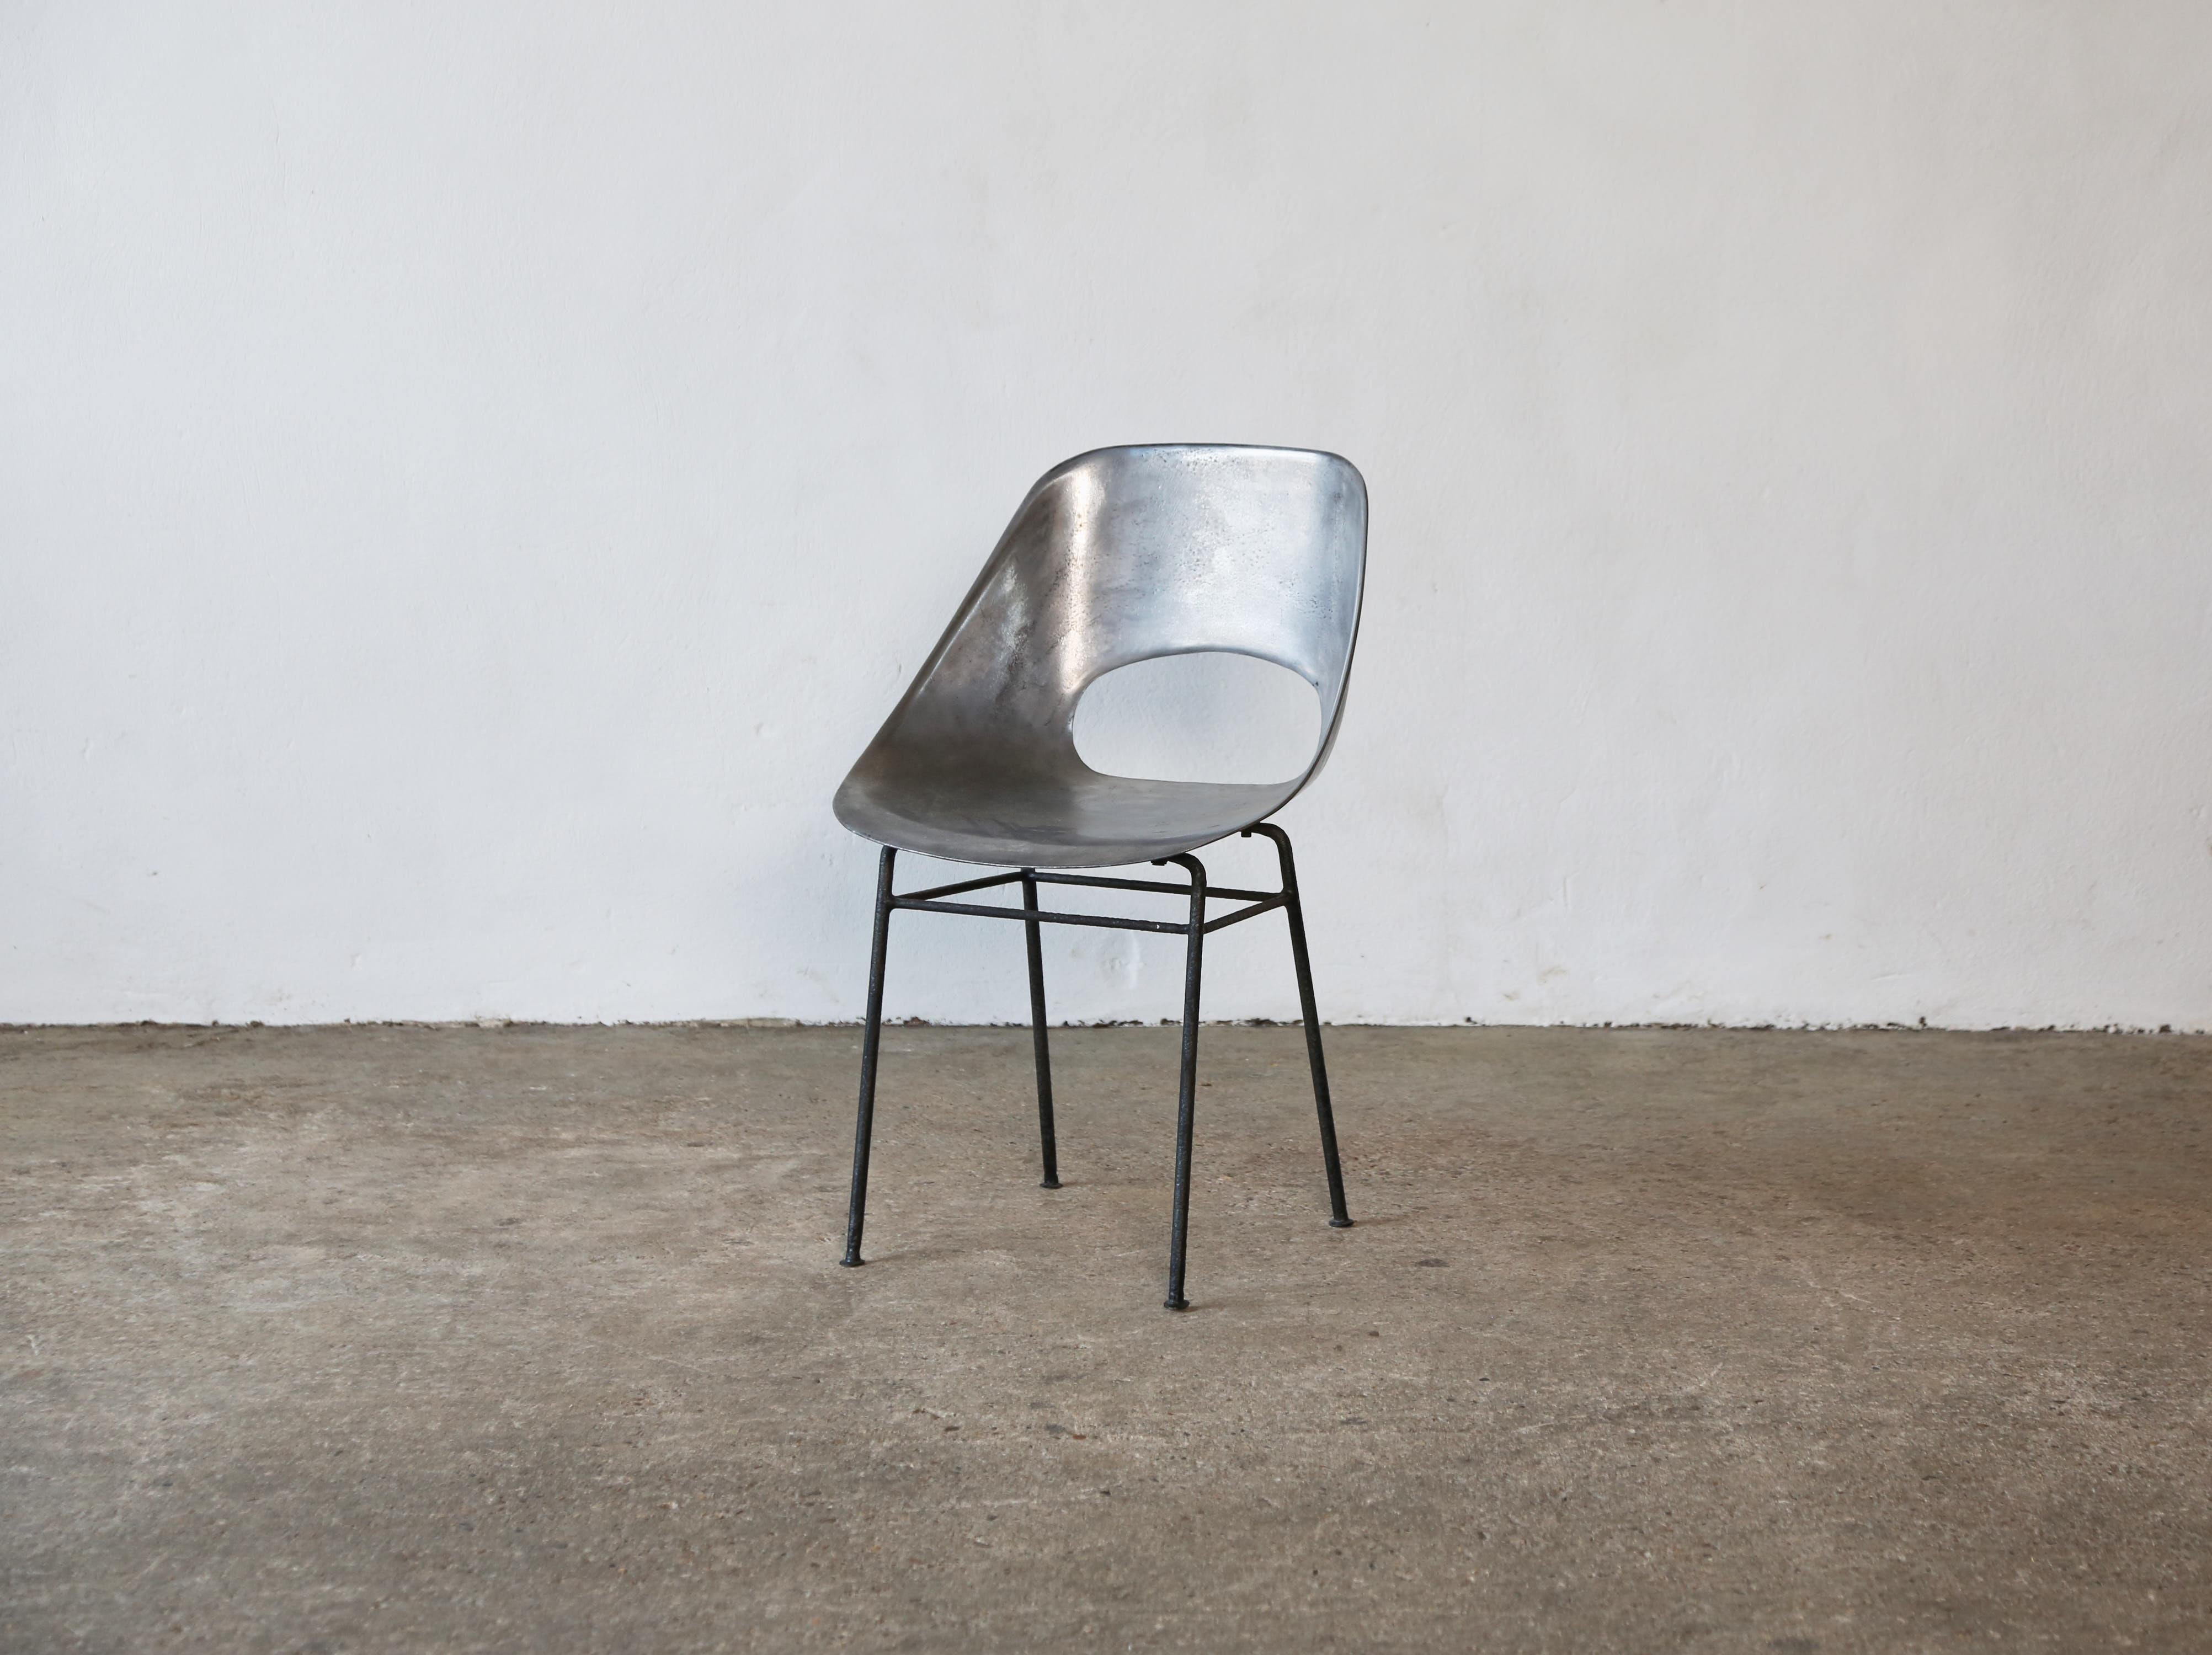 Rare variante de la chaise Tulipe de Pierre Guariche en fonte d'aluminium, datant des années 1950. En bon état vintage. La chaise a été professionnellement polie. Les imperfections naturelles du métal moulé donnent à ces chaises un caractère